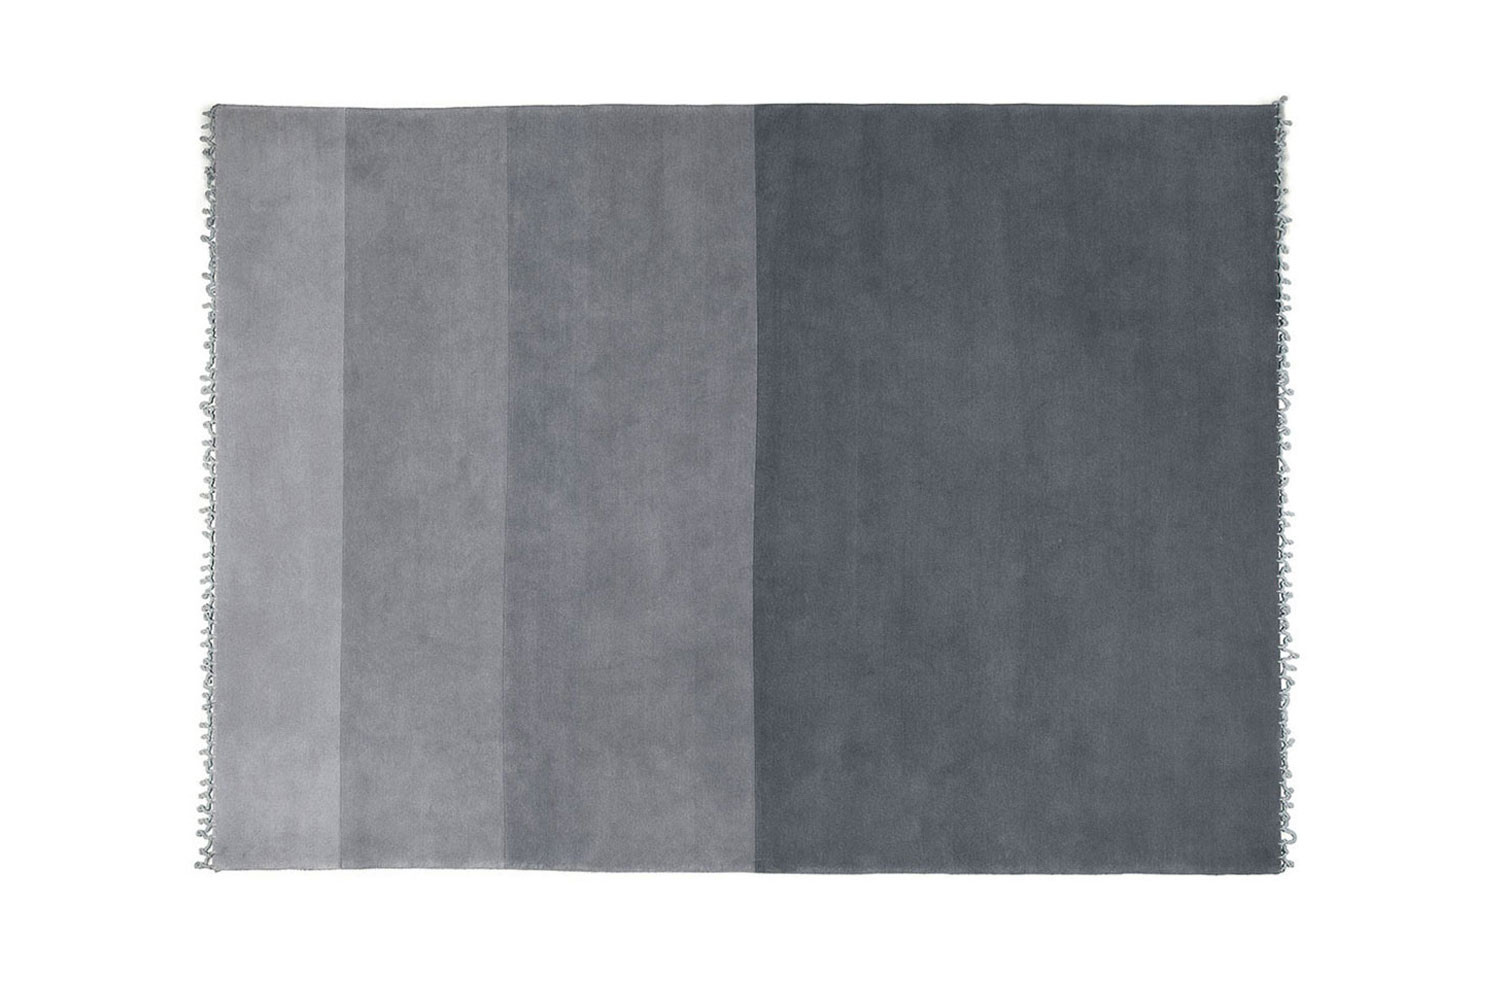 Moderno tappeto rettangolare in lana a pelo corto, a grandi strisce in varie tonalità di grigio